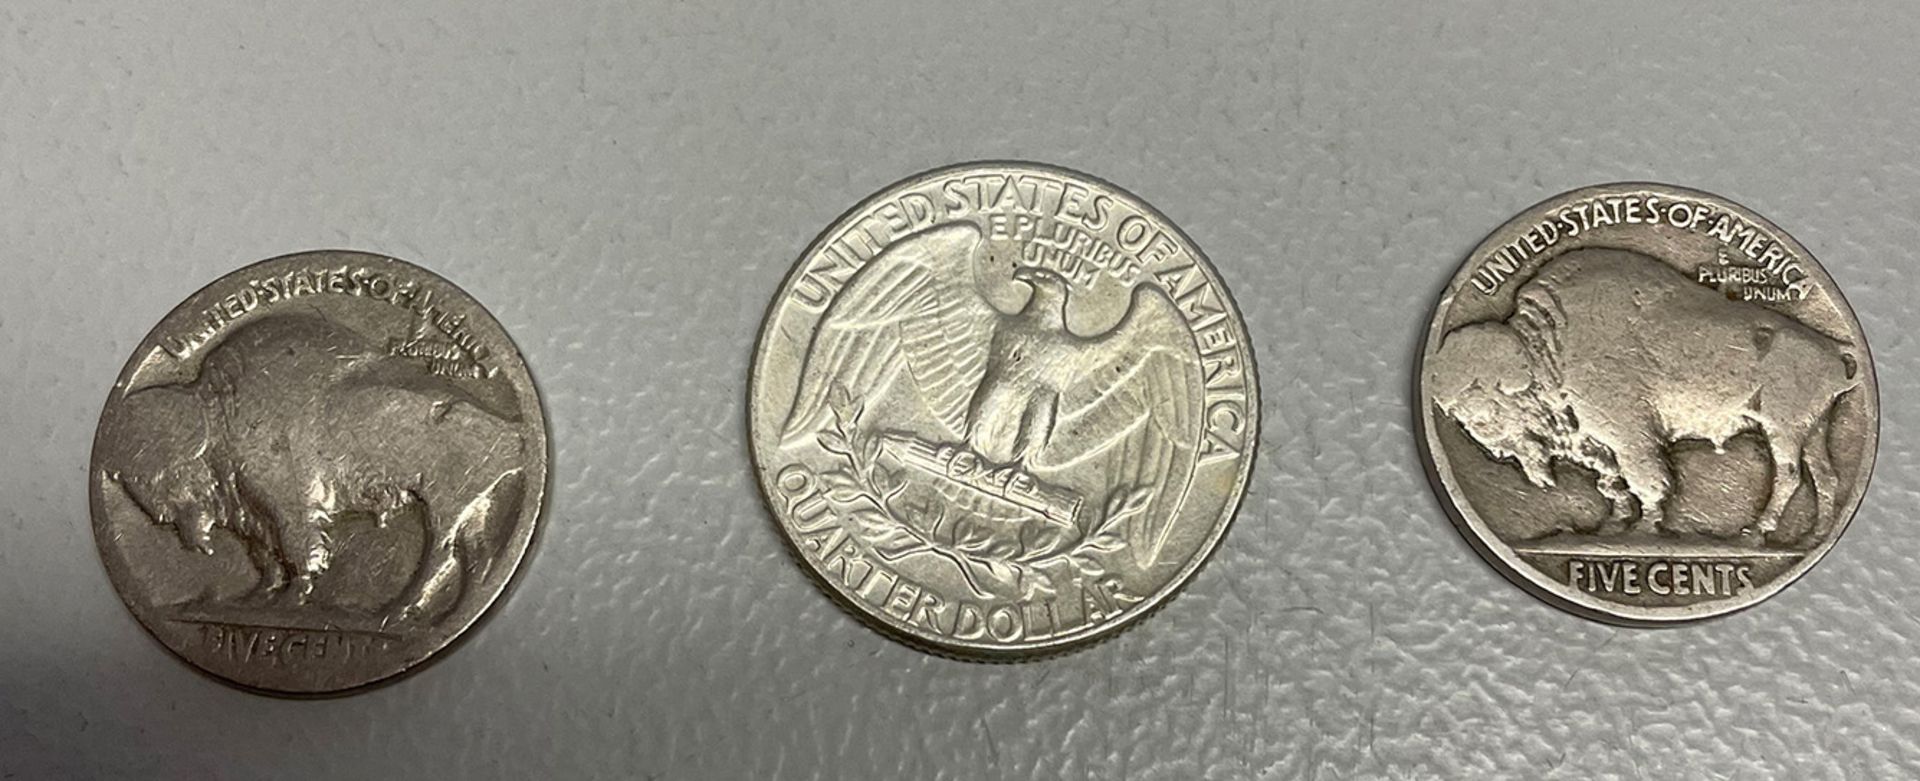 Konvolut Münzen USA, darunter 1 x Siber-Dollar 1885; 2 x Silber-Dollar 1923, 6 x Half Dollar (1943, - Bild 10 aus 14